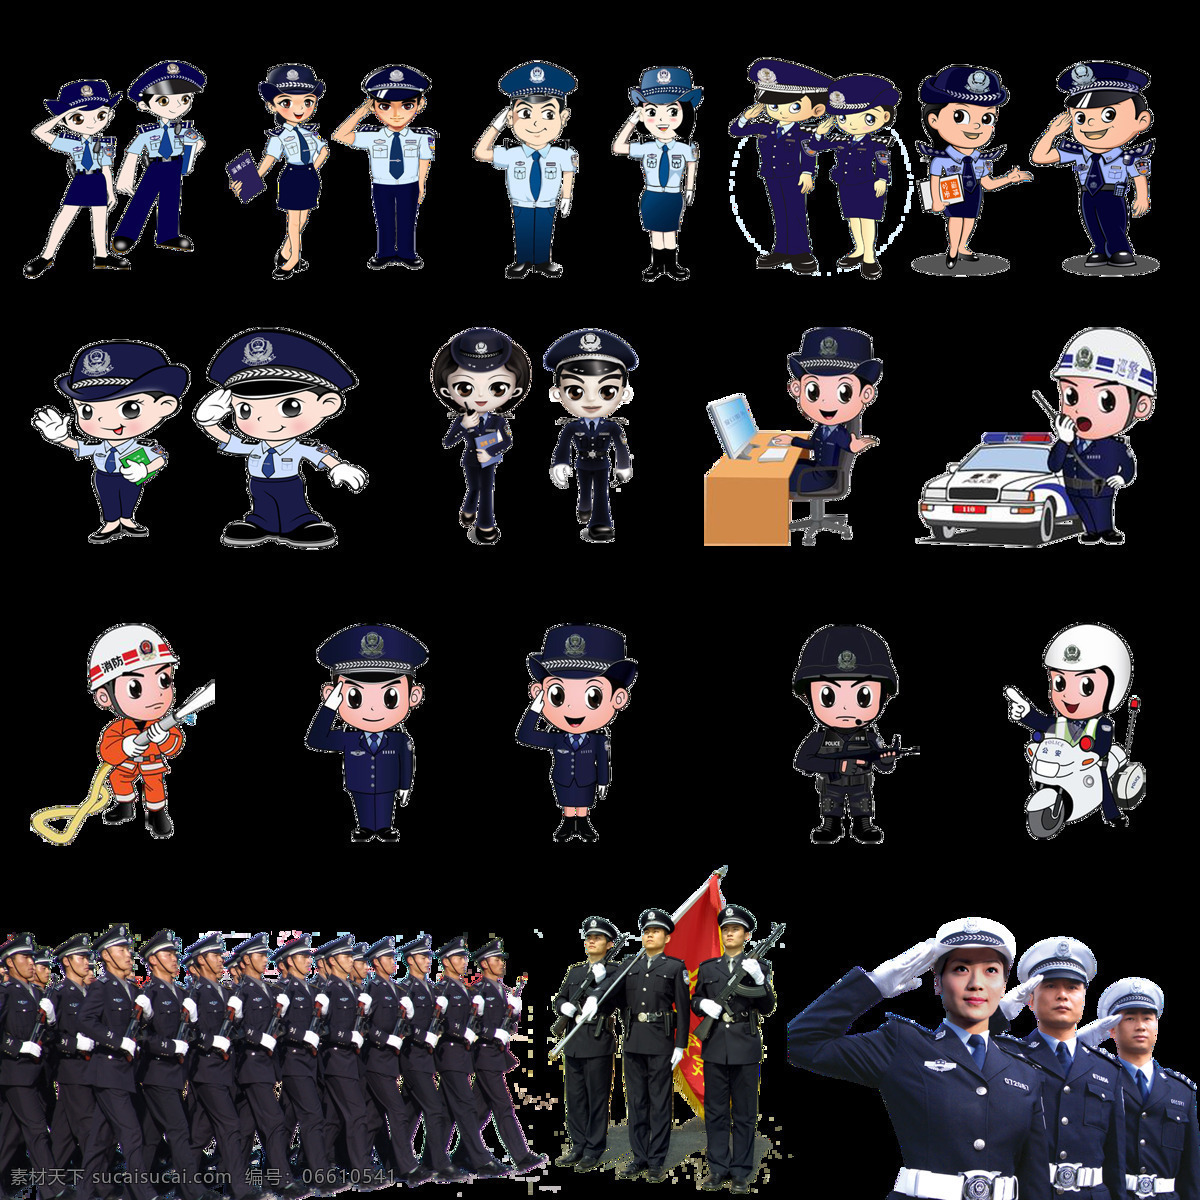 警察 卡通 透明 图 层 格式 警察卡通 警察素材 免扣素材 动漫动画 动漫人物